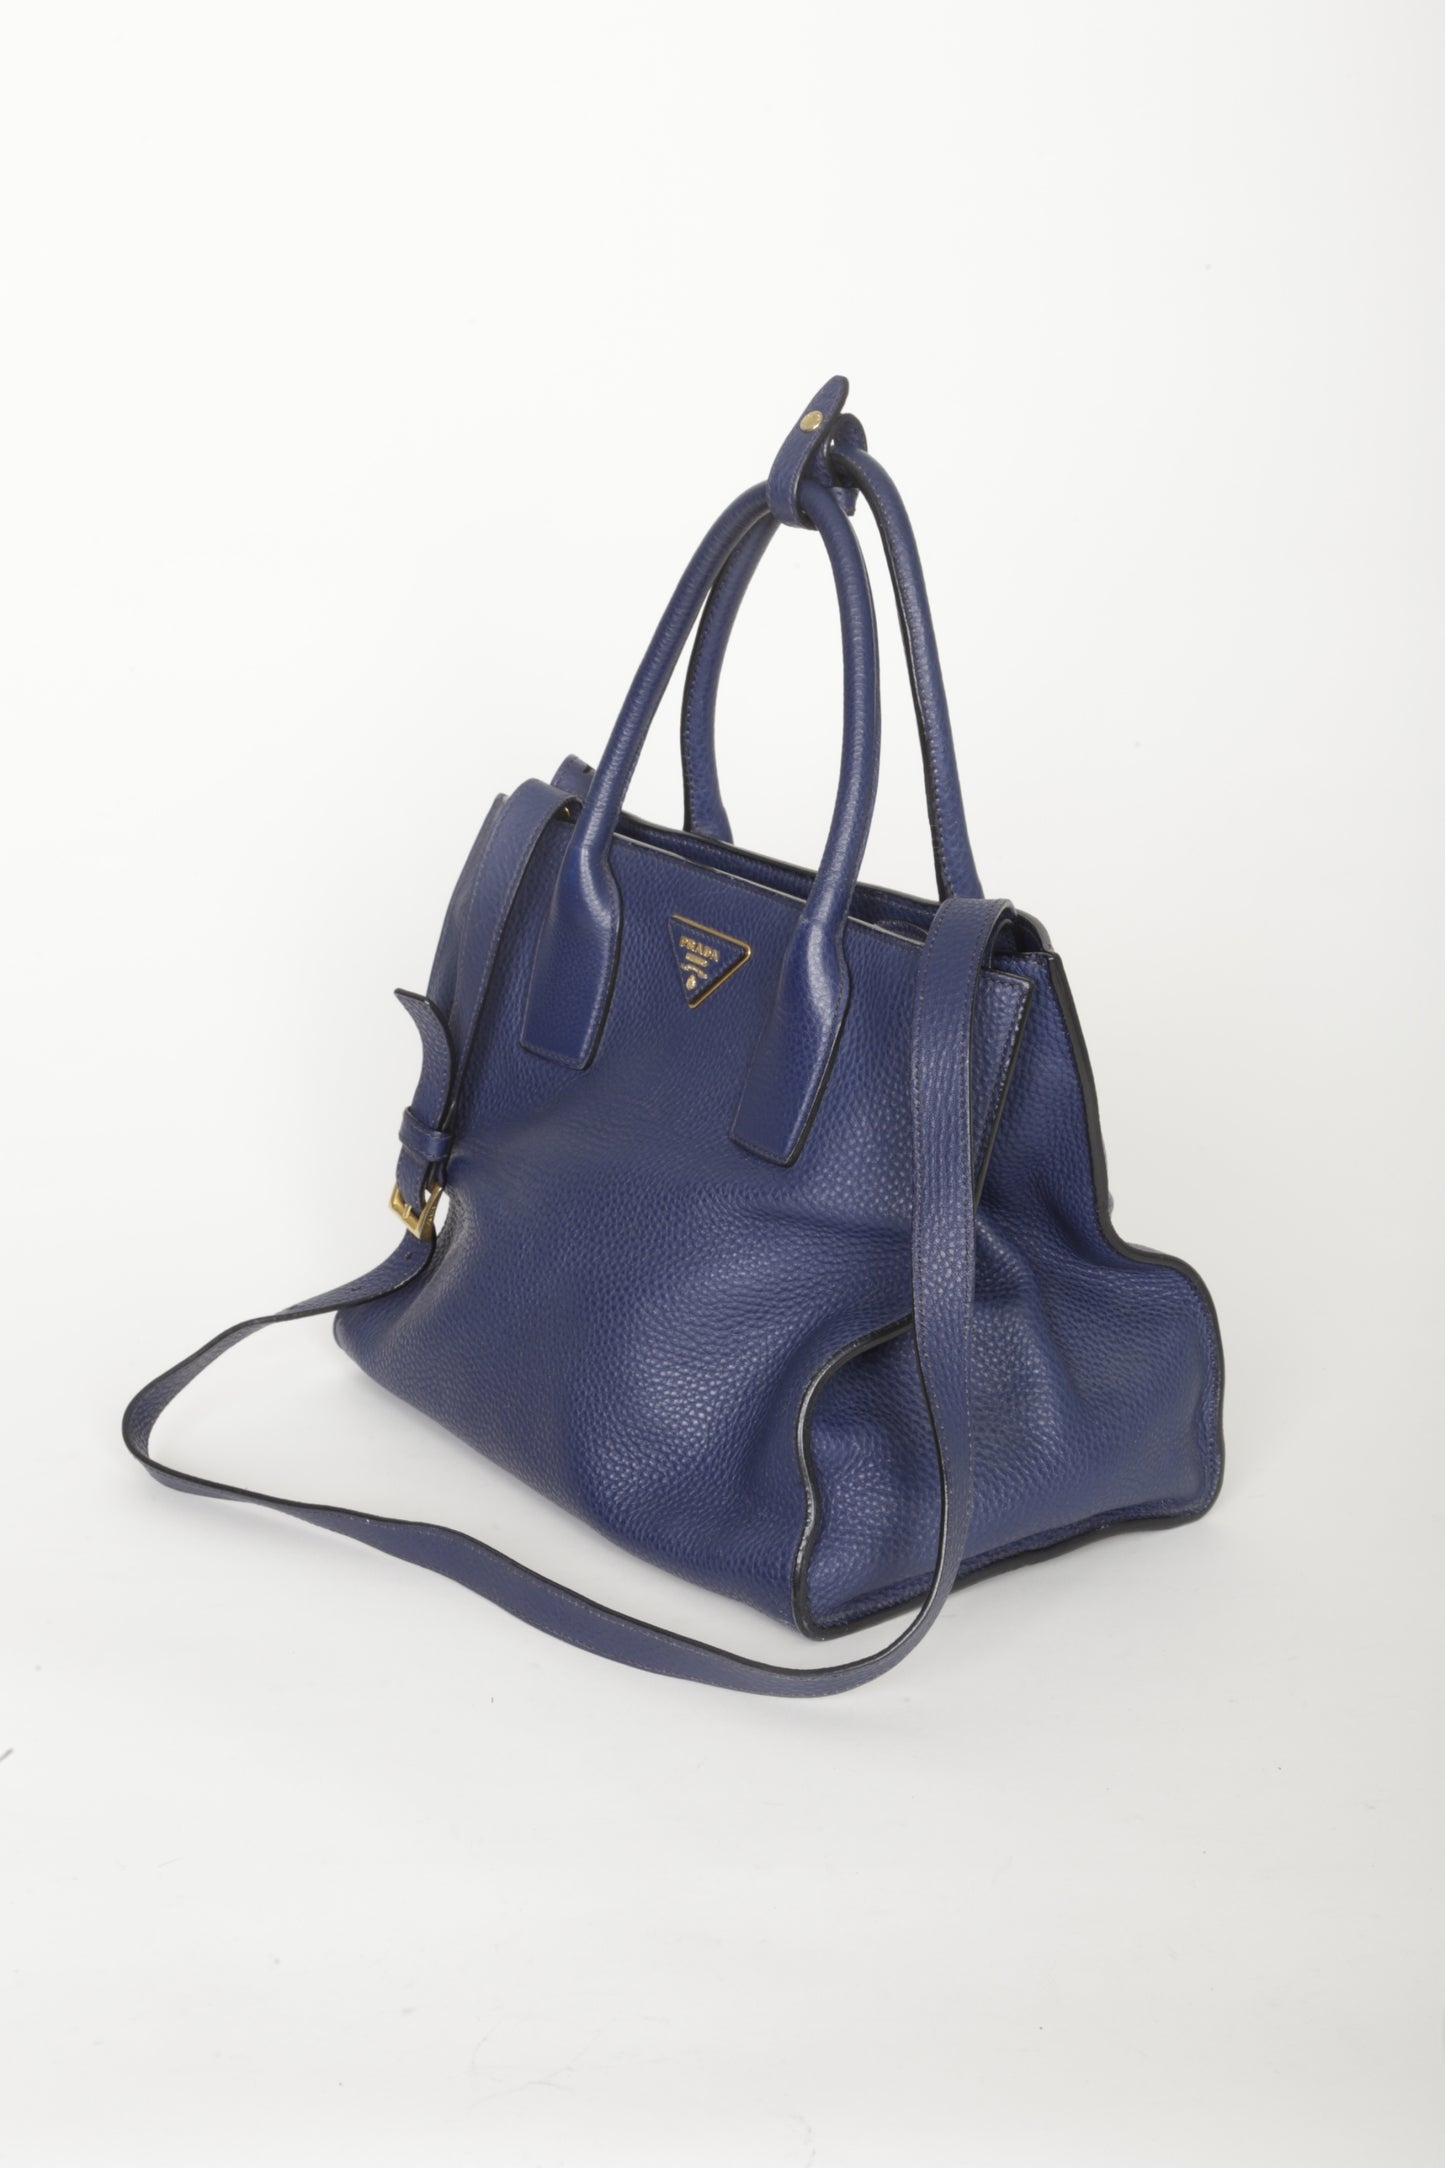 Prada Womens Blue Bag Size O/S